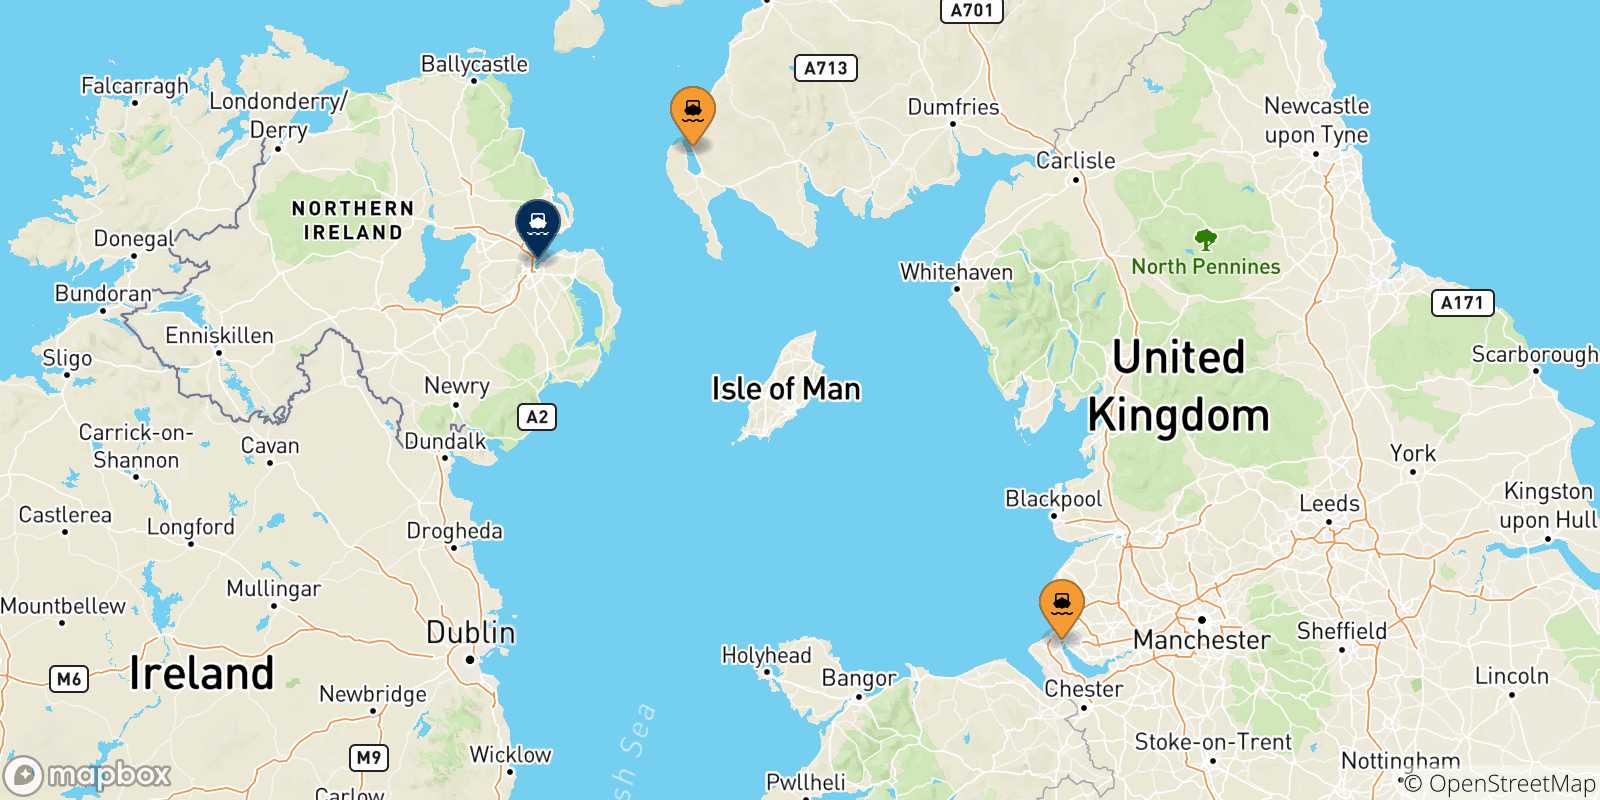 Mappa delle possibili rotte tra il Regno Unito e Belfast